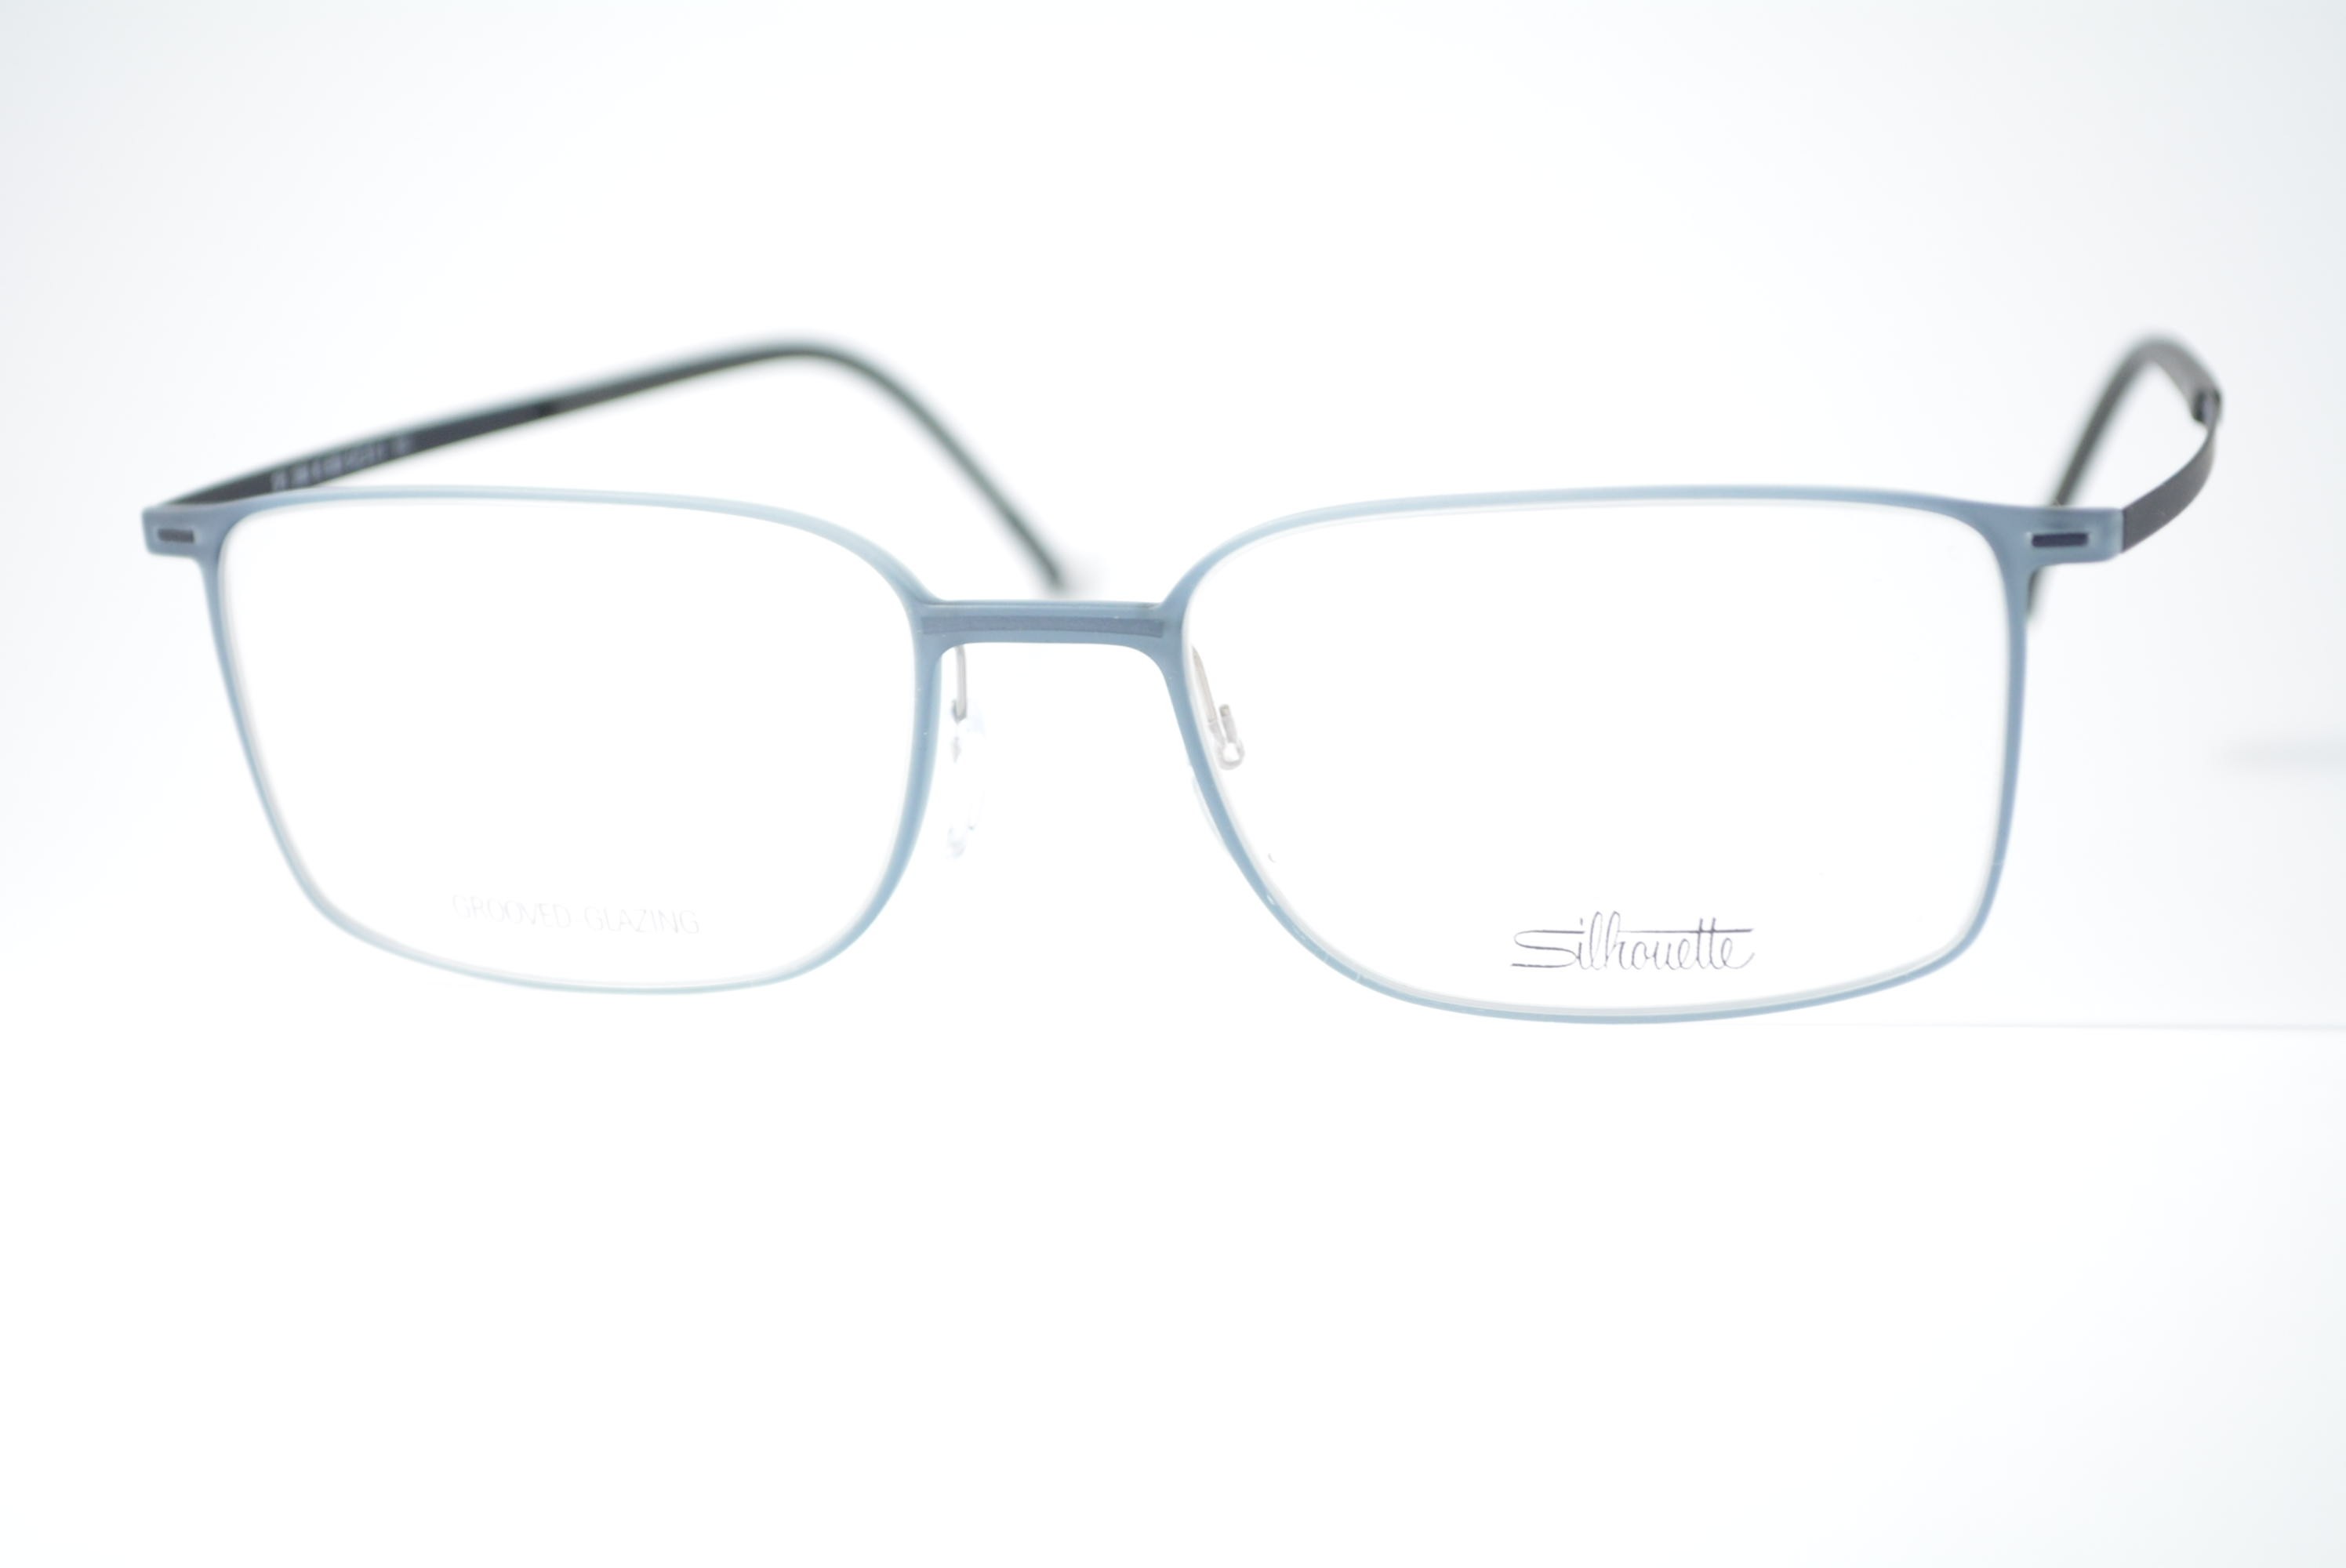 armação de óculos Silhouette mod 2884 40 6059